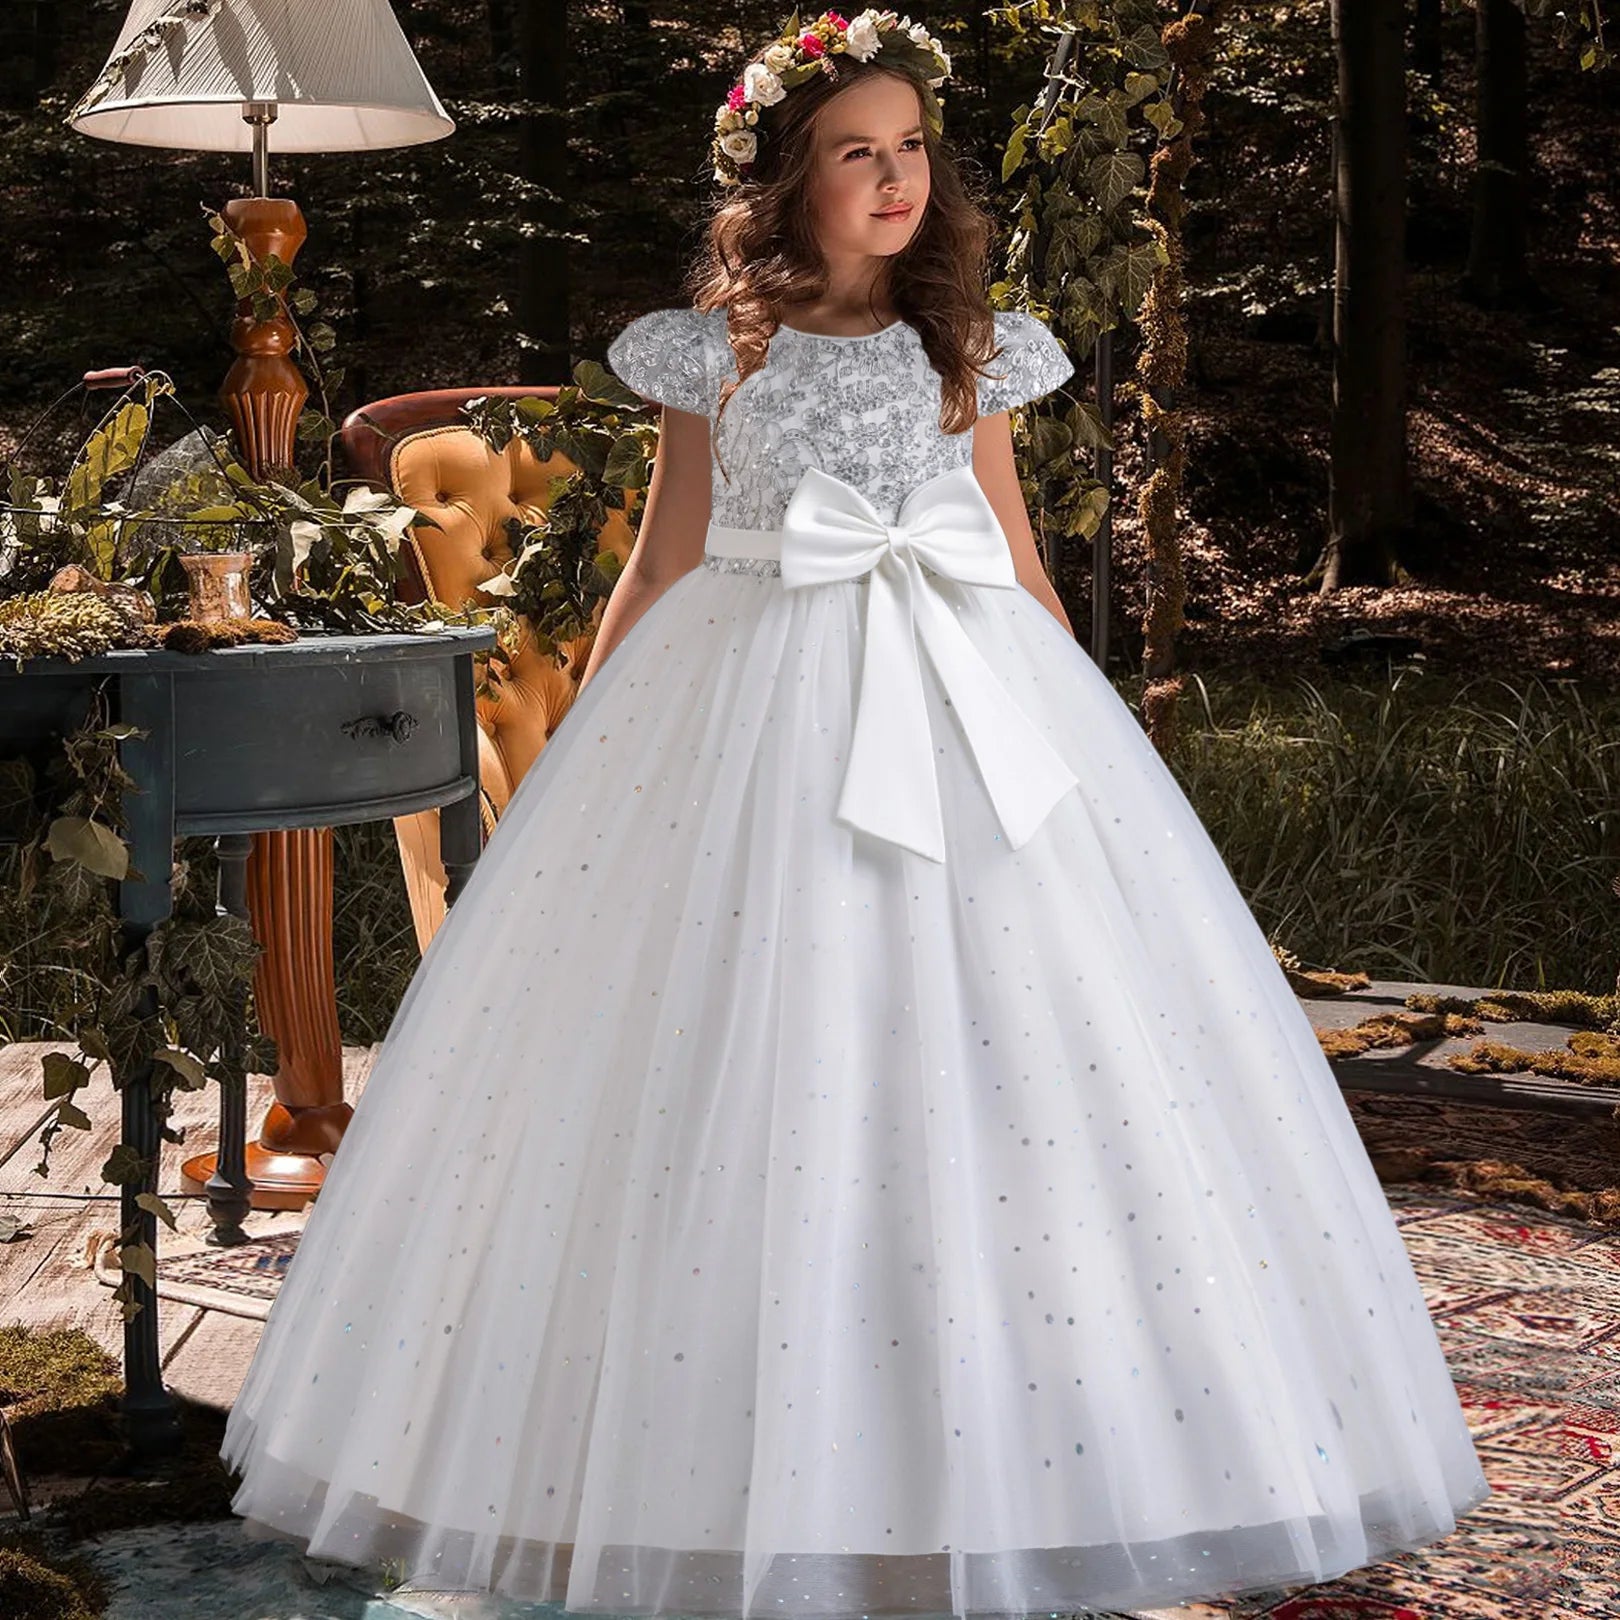 Princess Bridesmaid Tulle Ankle Length Dress White by Baby Minaj Cruz